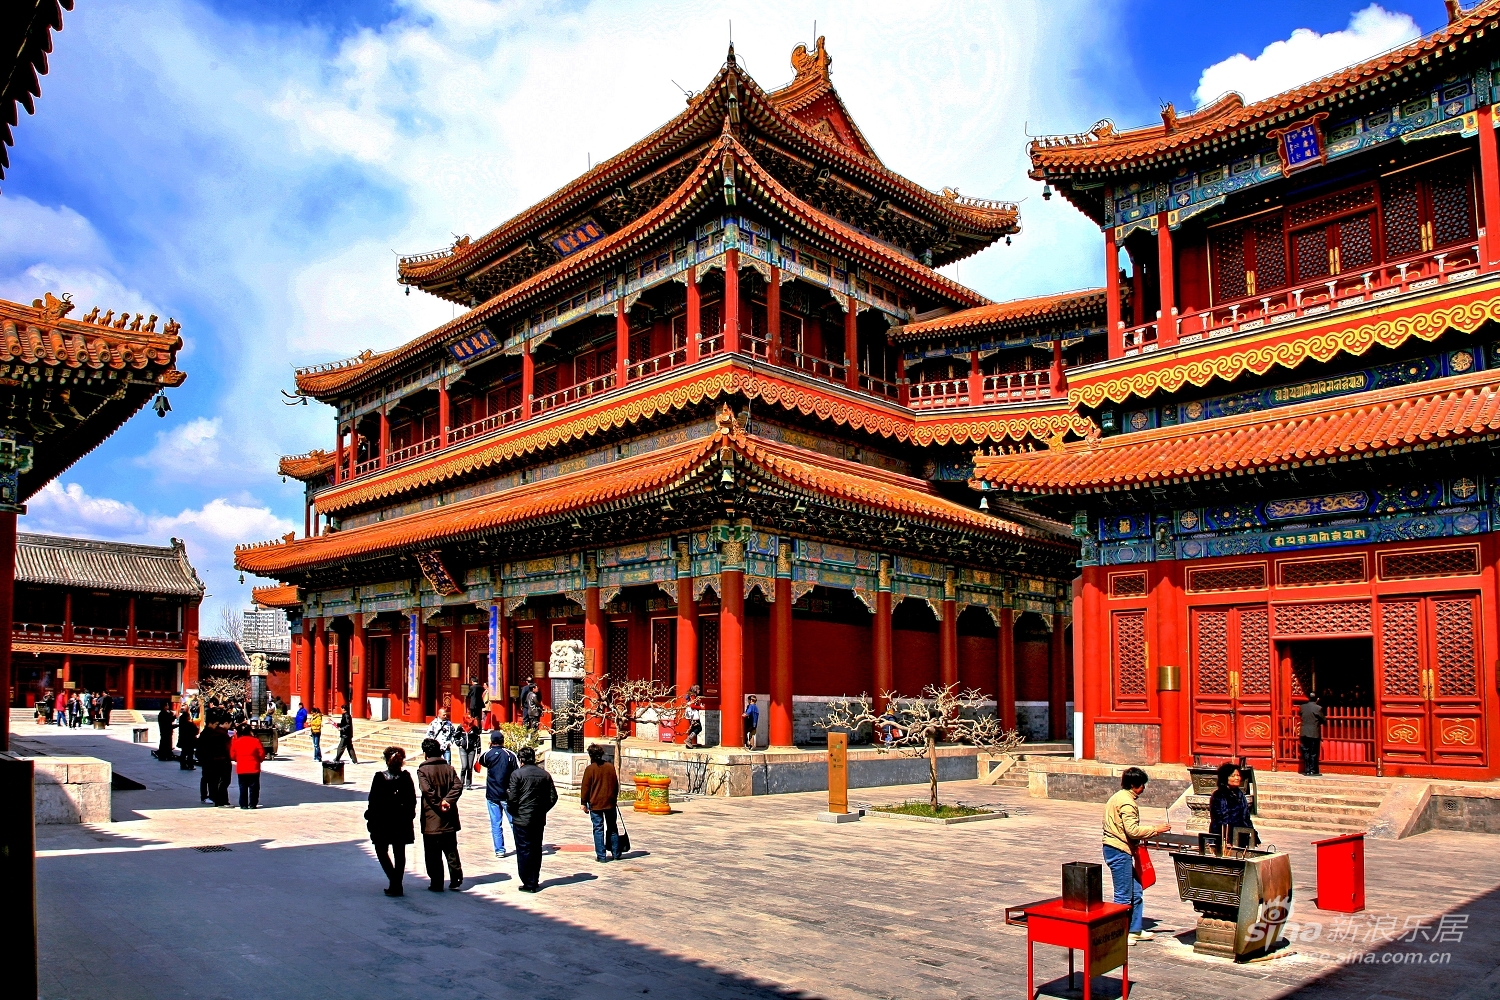 تور چین با پرواز مستقیم و اقامت 7 روزه در بهترین هتل های کشور چین